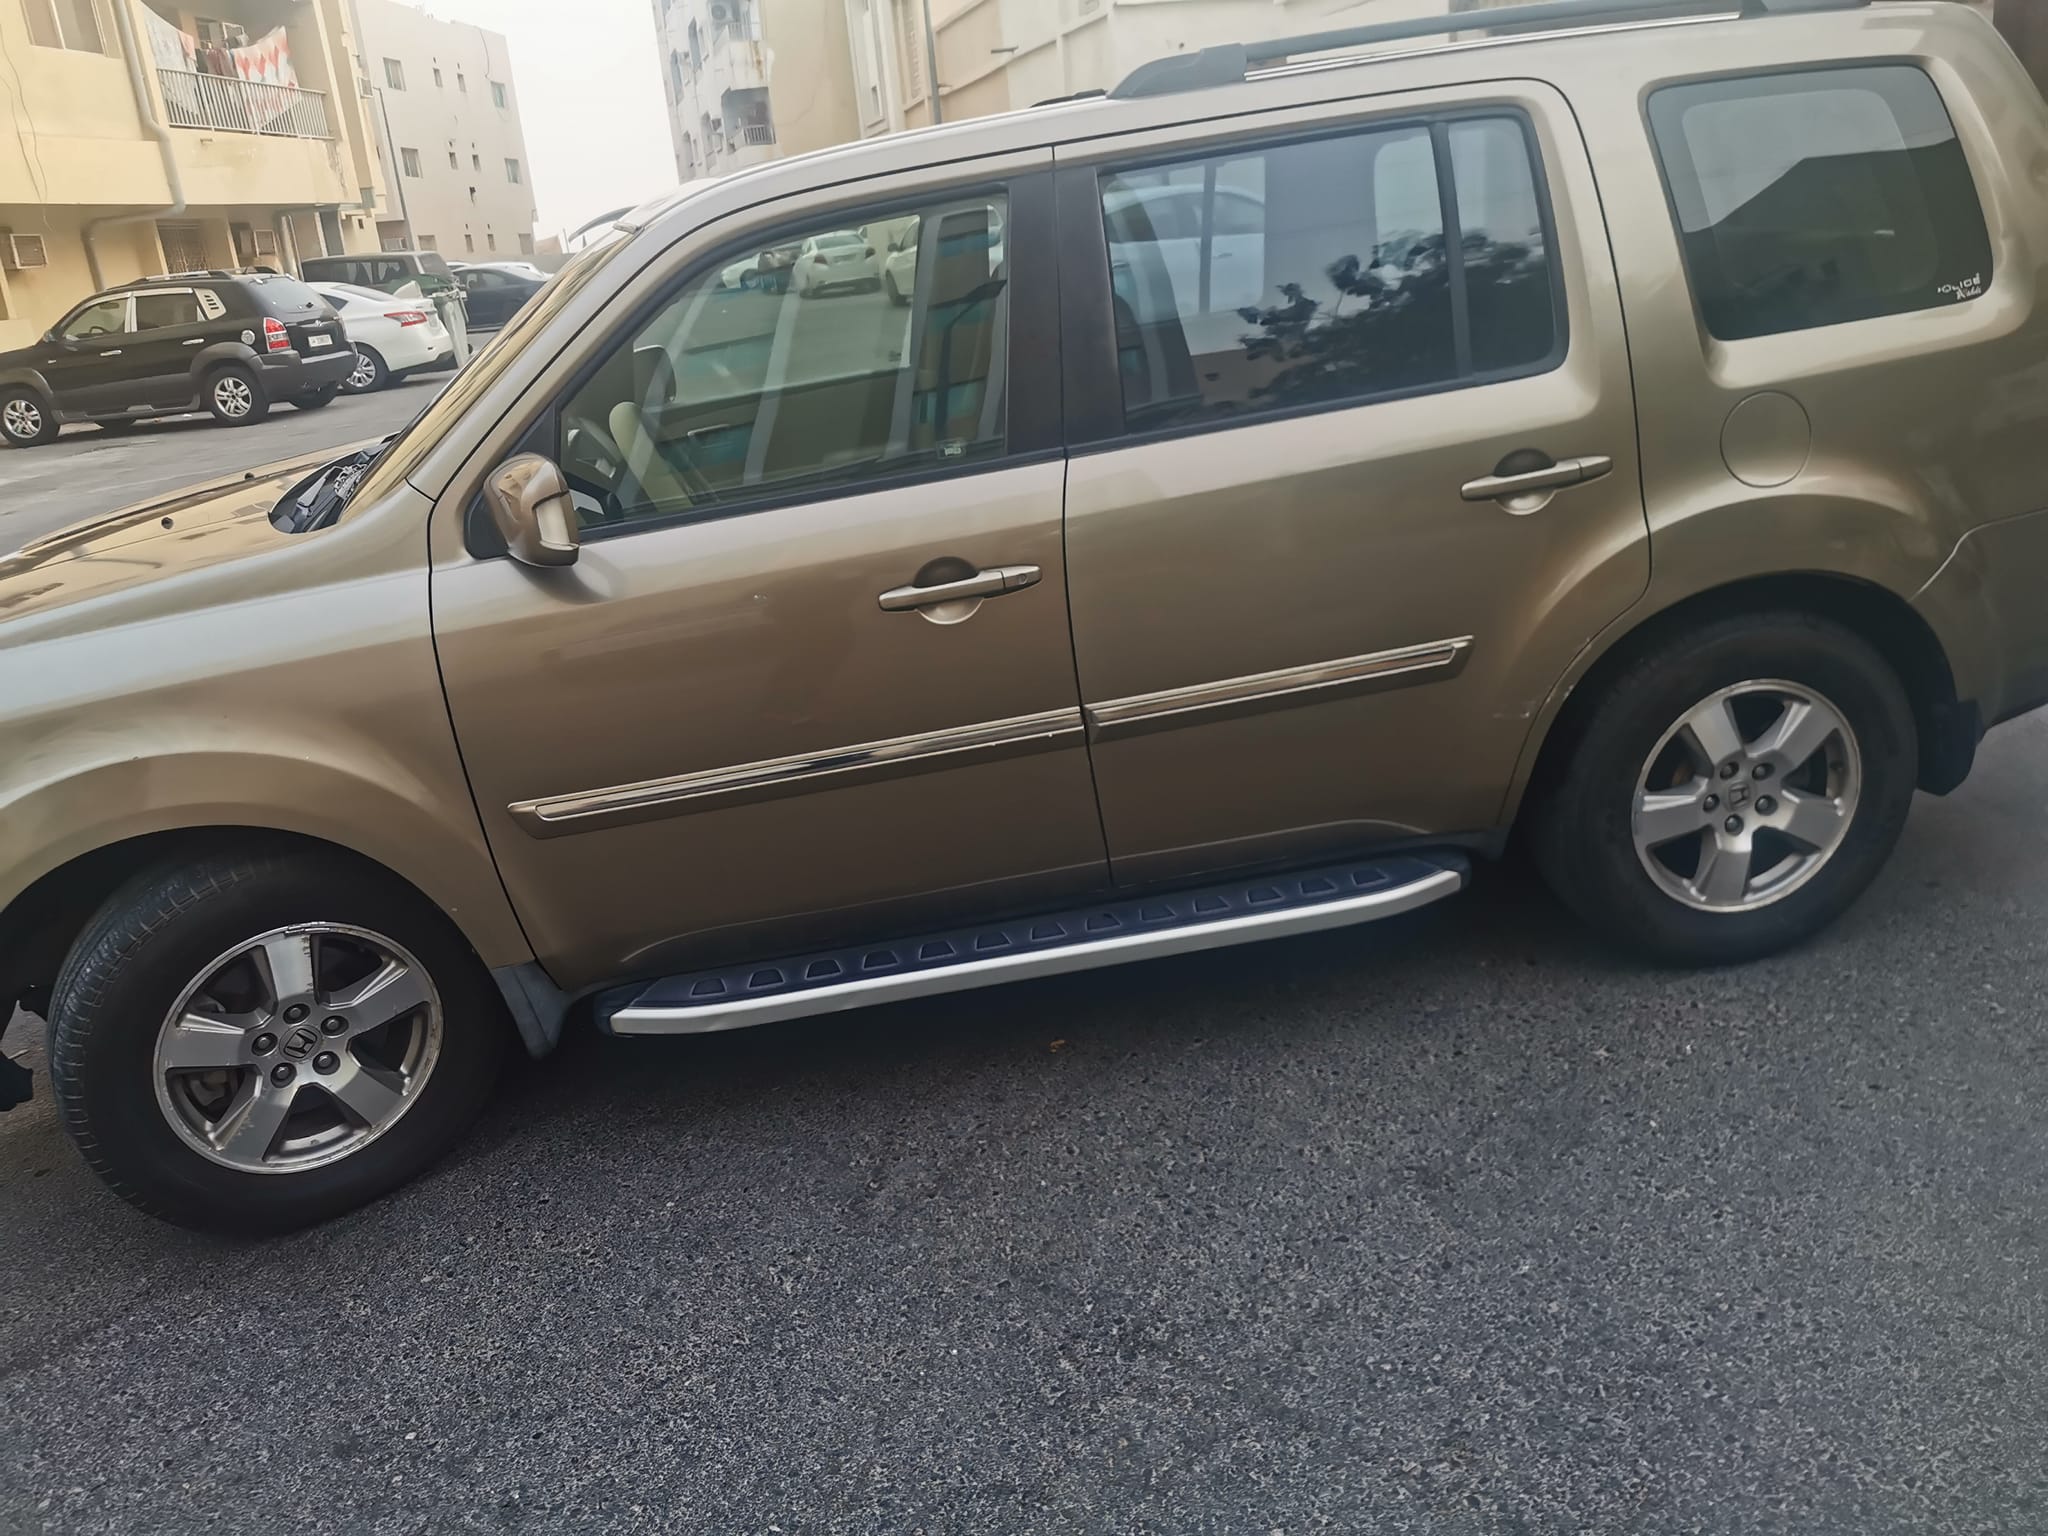 سيارات مستعملة هوندا للبيع قطر الدوحة سيارات رخيصة مستعملة في قطر للبيع